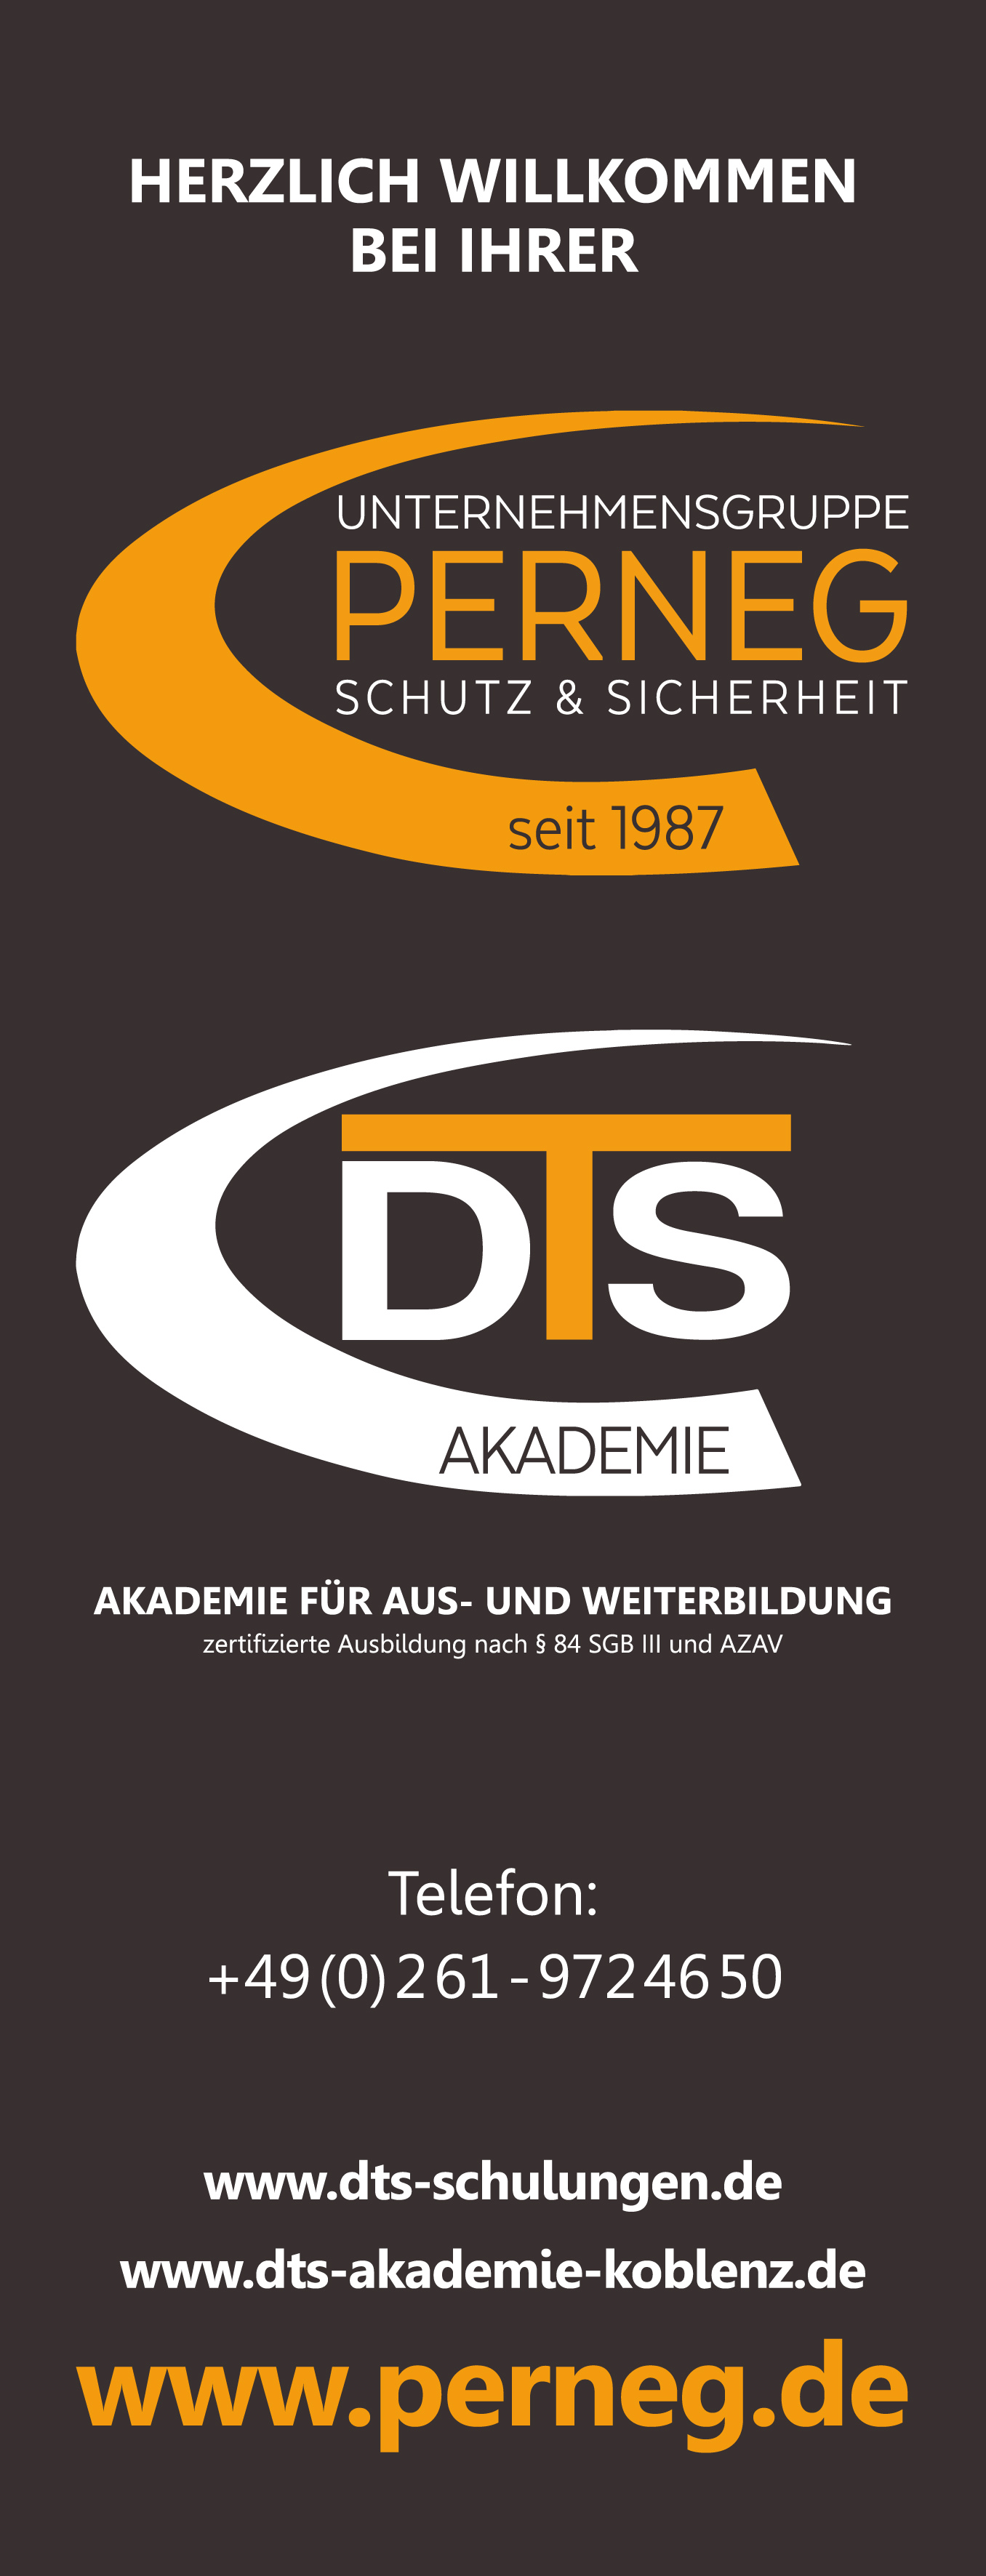 Willkommen bei der DTS Akademie Koblenz